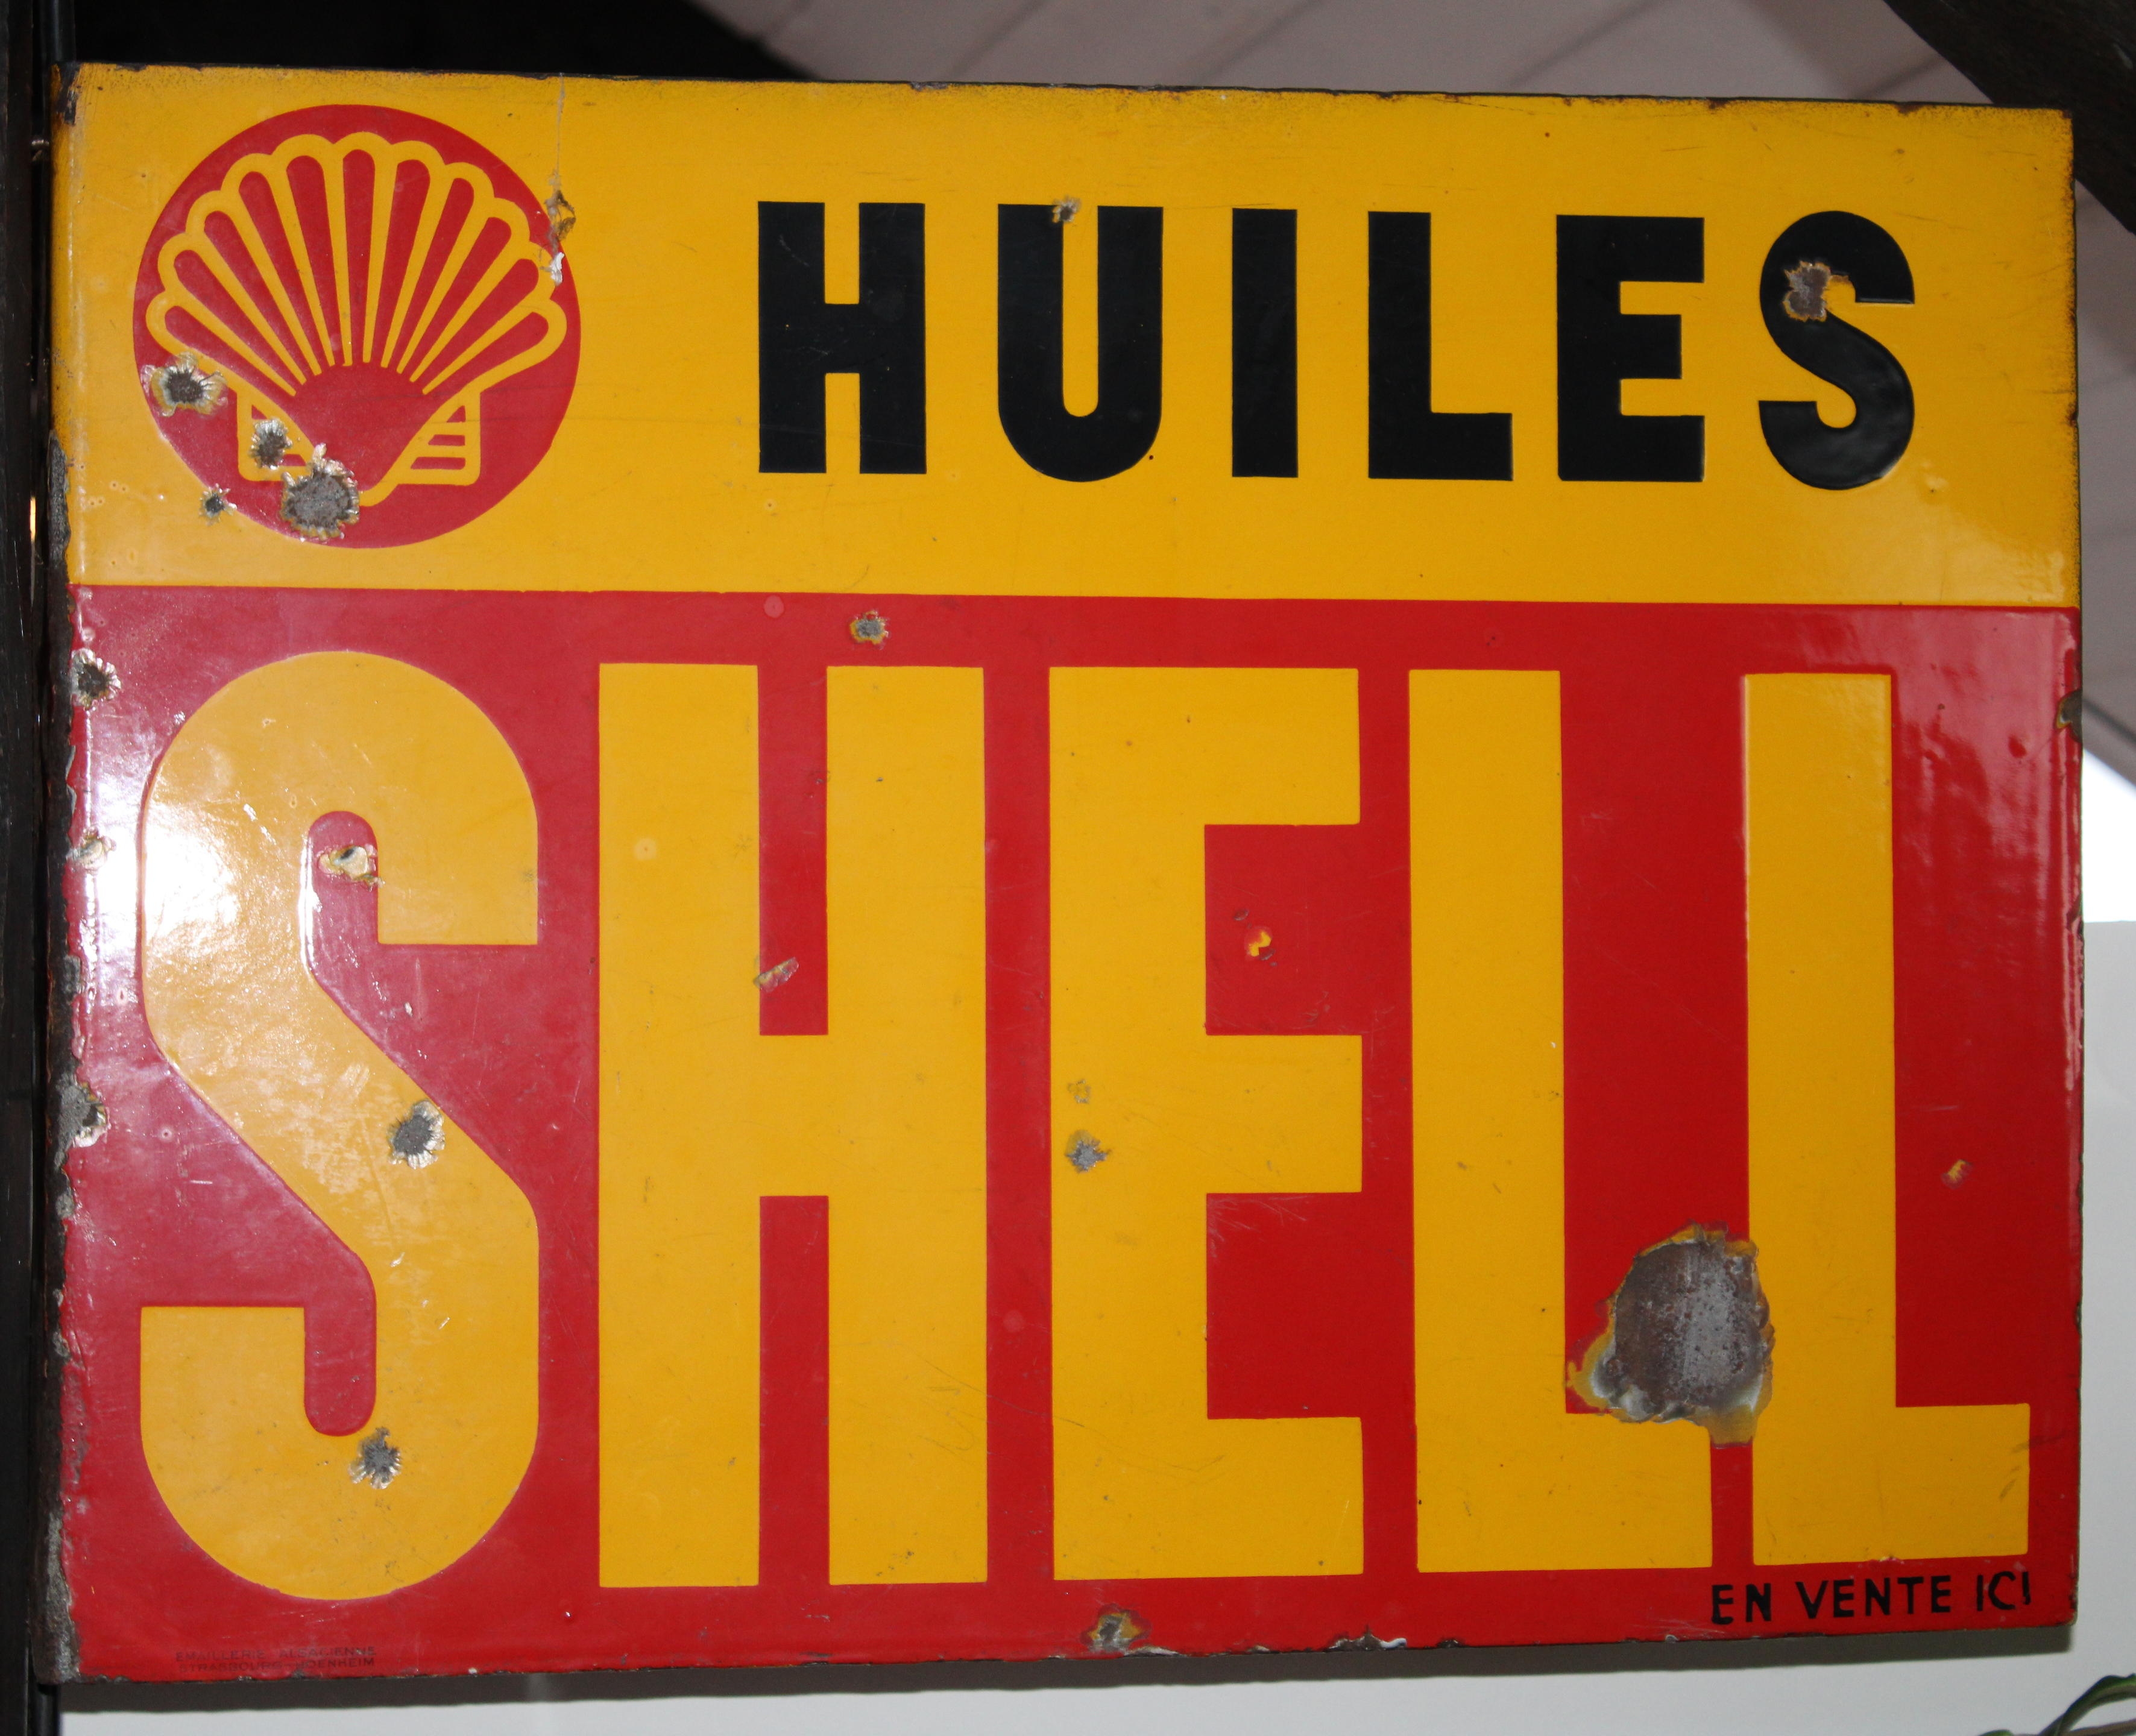 A Huiles Shell enamel sign,